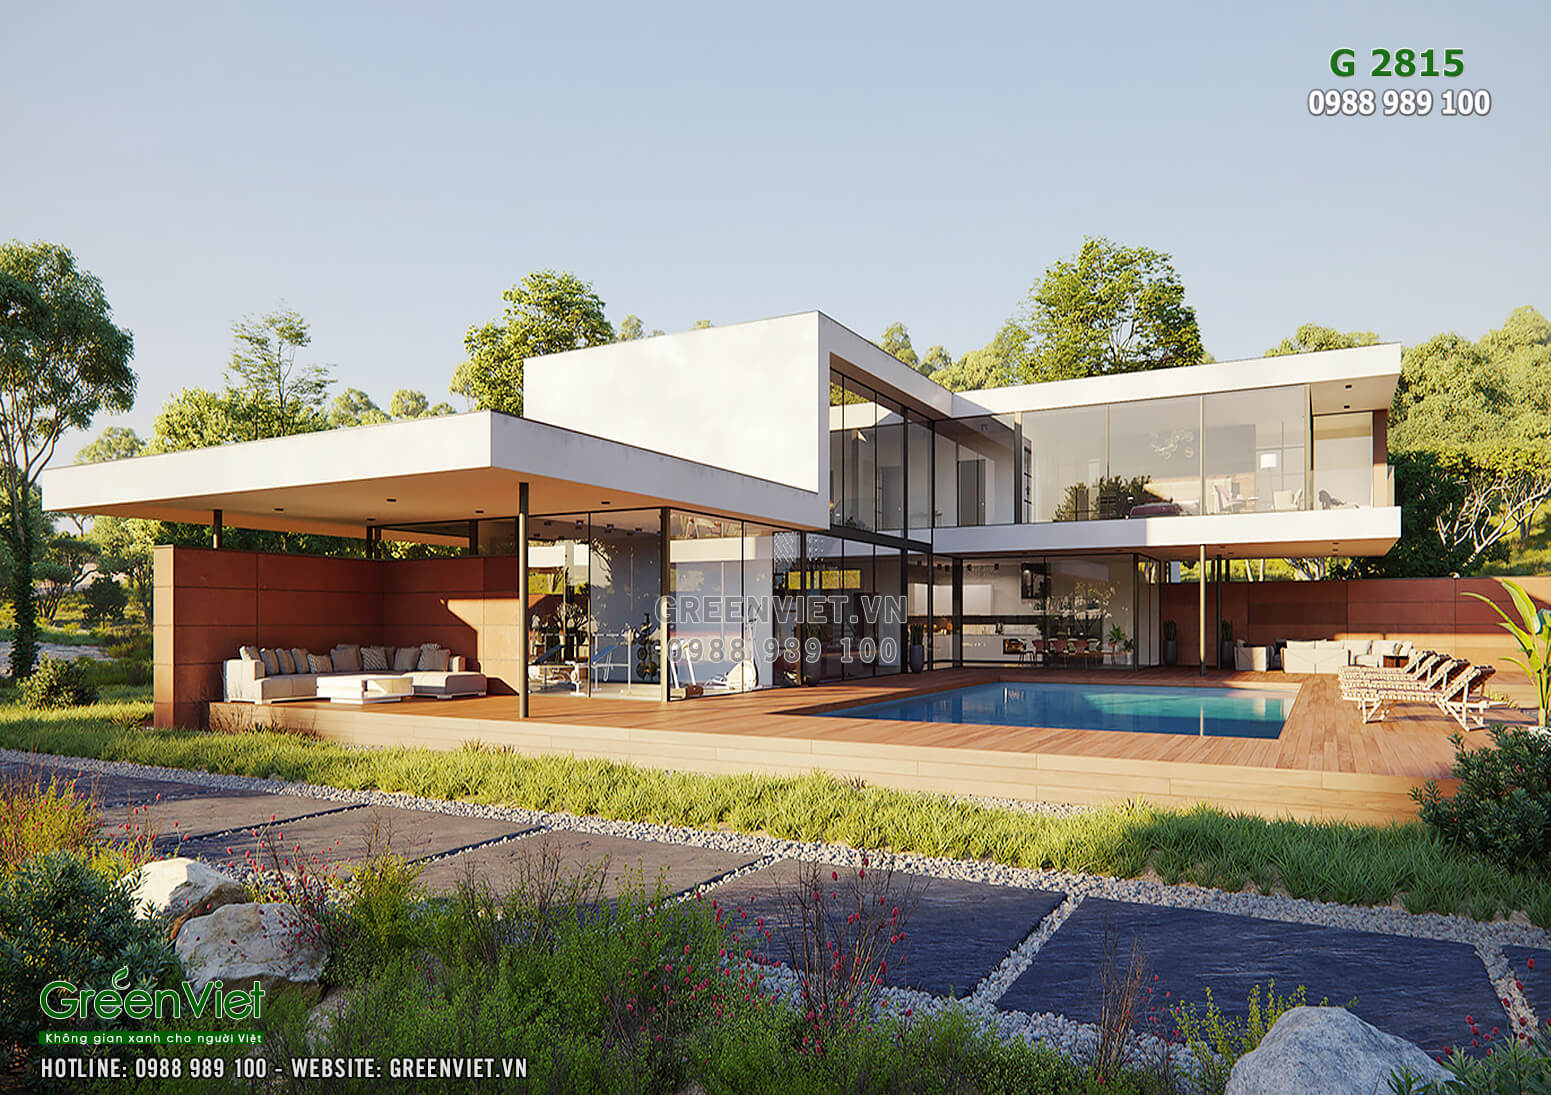 Hình ảnh: Giải pháp thiết kế villa nghỉ dưỡng Second Home 2 tầng hiện đại - GreenViet 2815